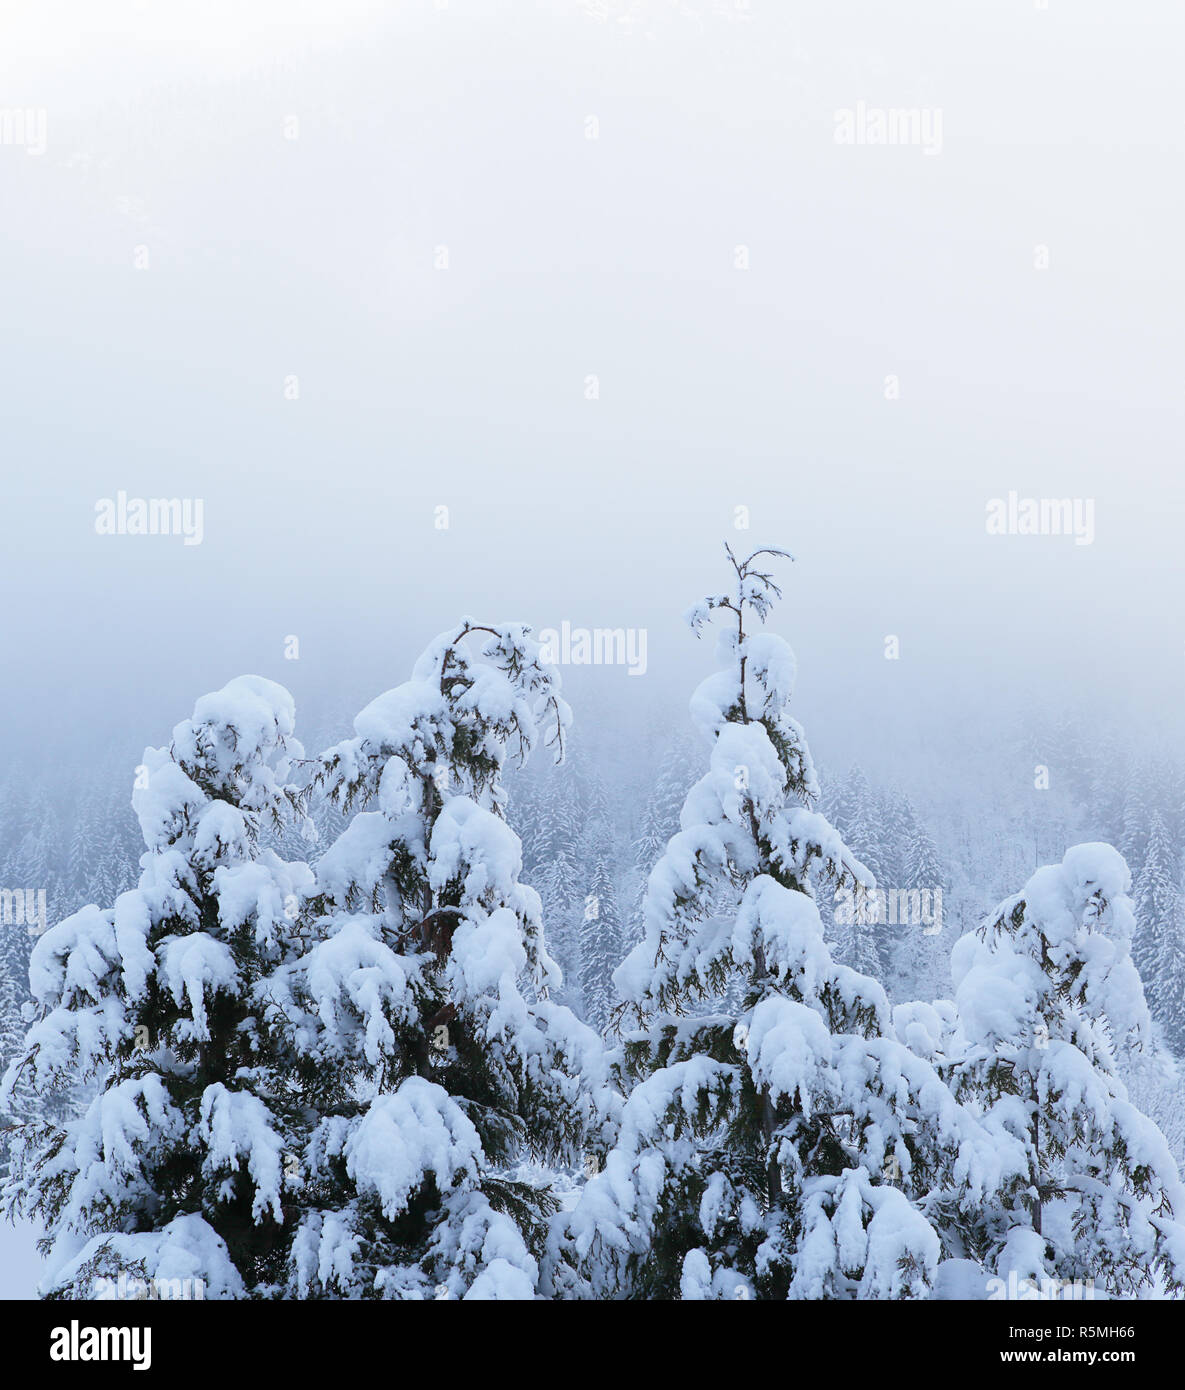 Incantevole paesaggio invernale con neve coperti di alberi in frosty mattinata nebbiosa, copyspace di grandi dimensioni per il testo. Foto Stock